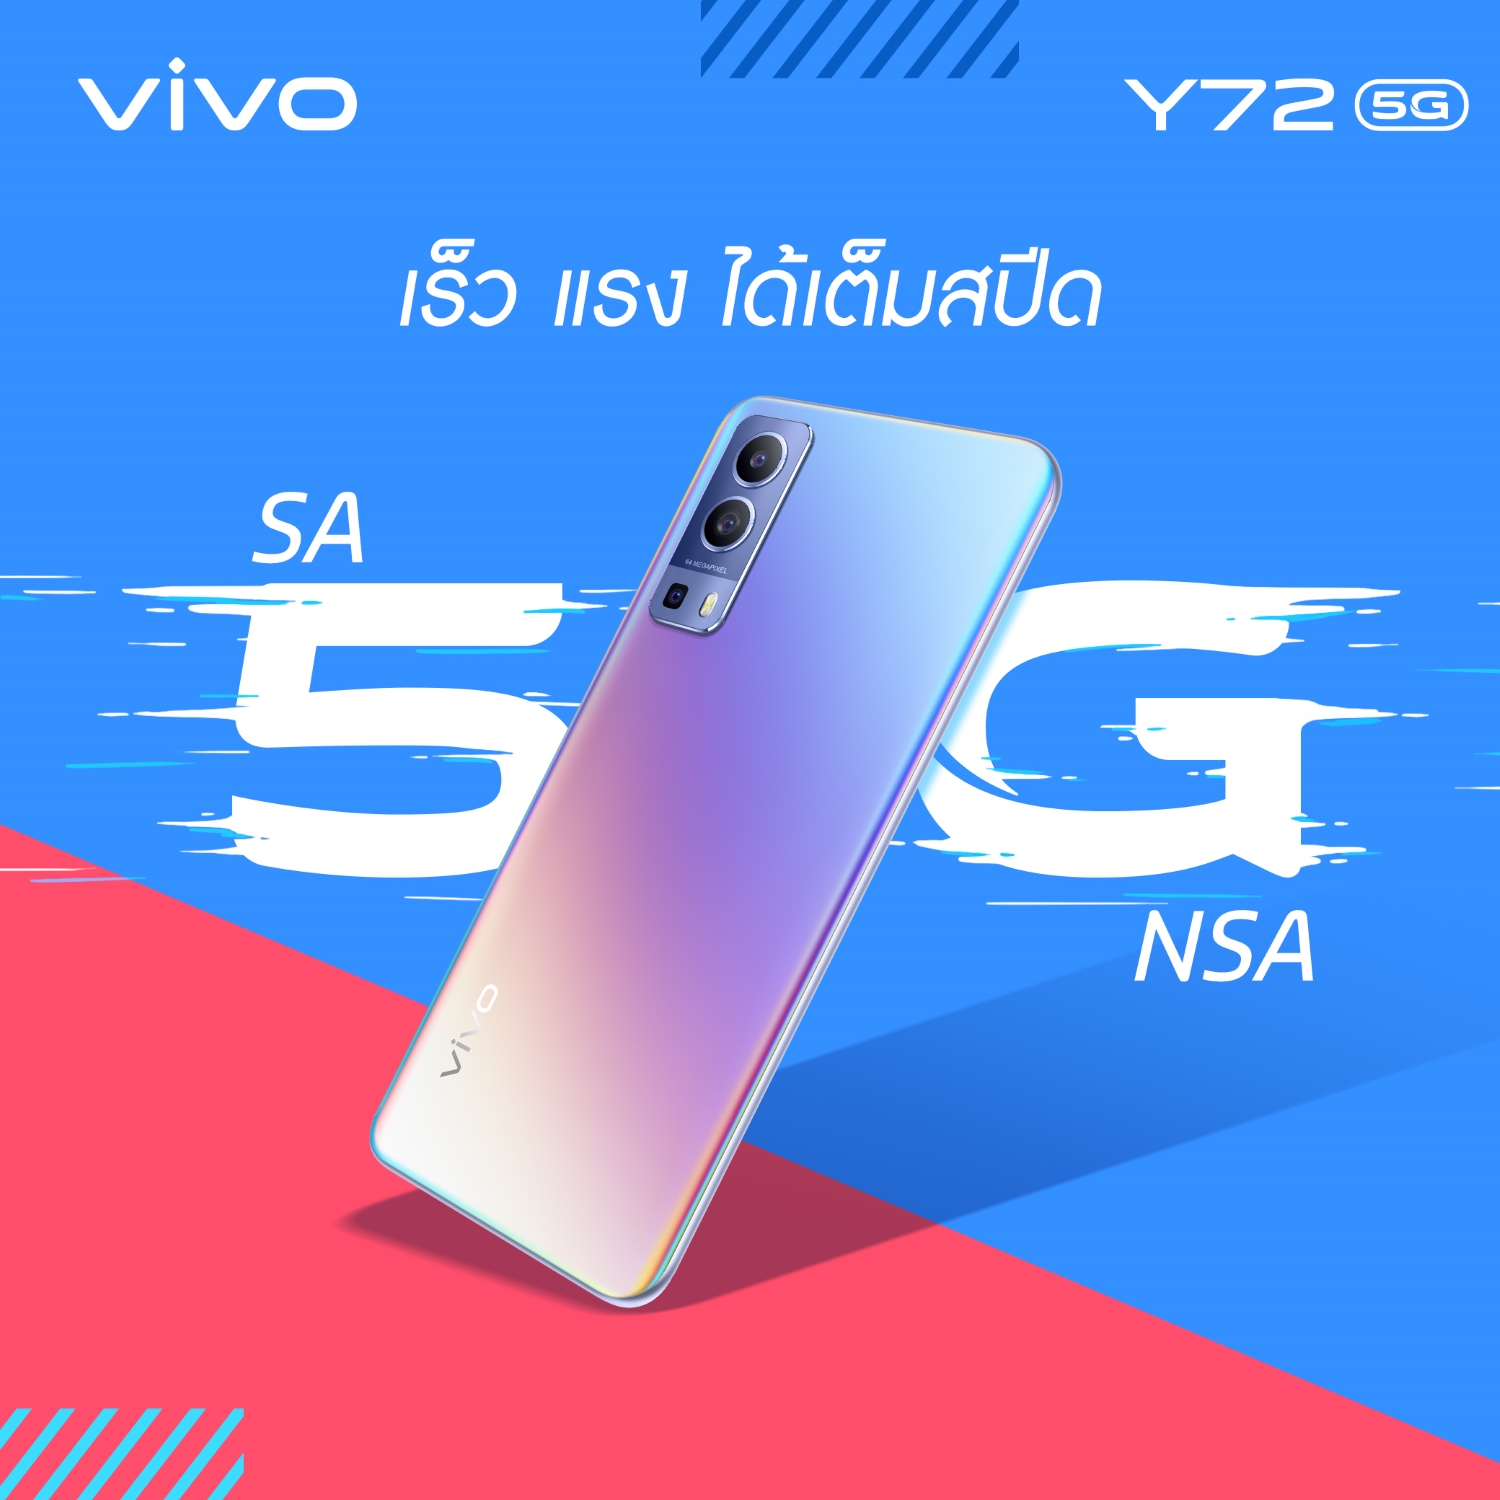 มาทำความรู้จักกับ Vivo Y72 5G สมาร์ตโฟนของคนรุ่นใหม่ ครบจบในเครื่องเดียว